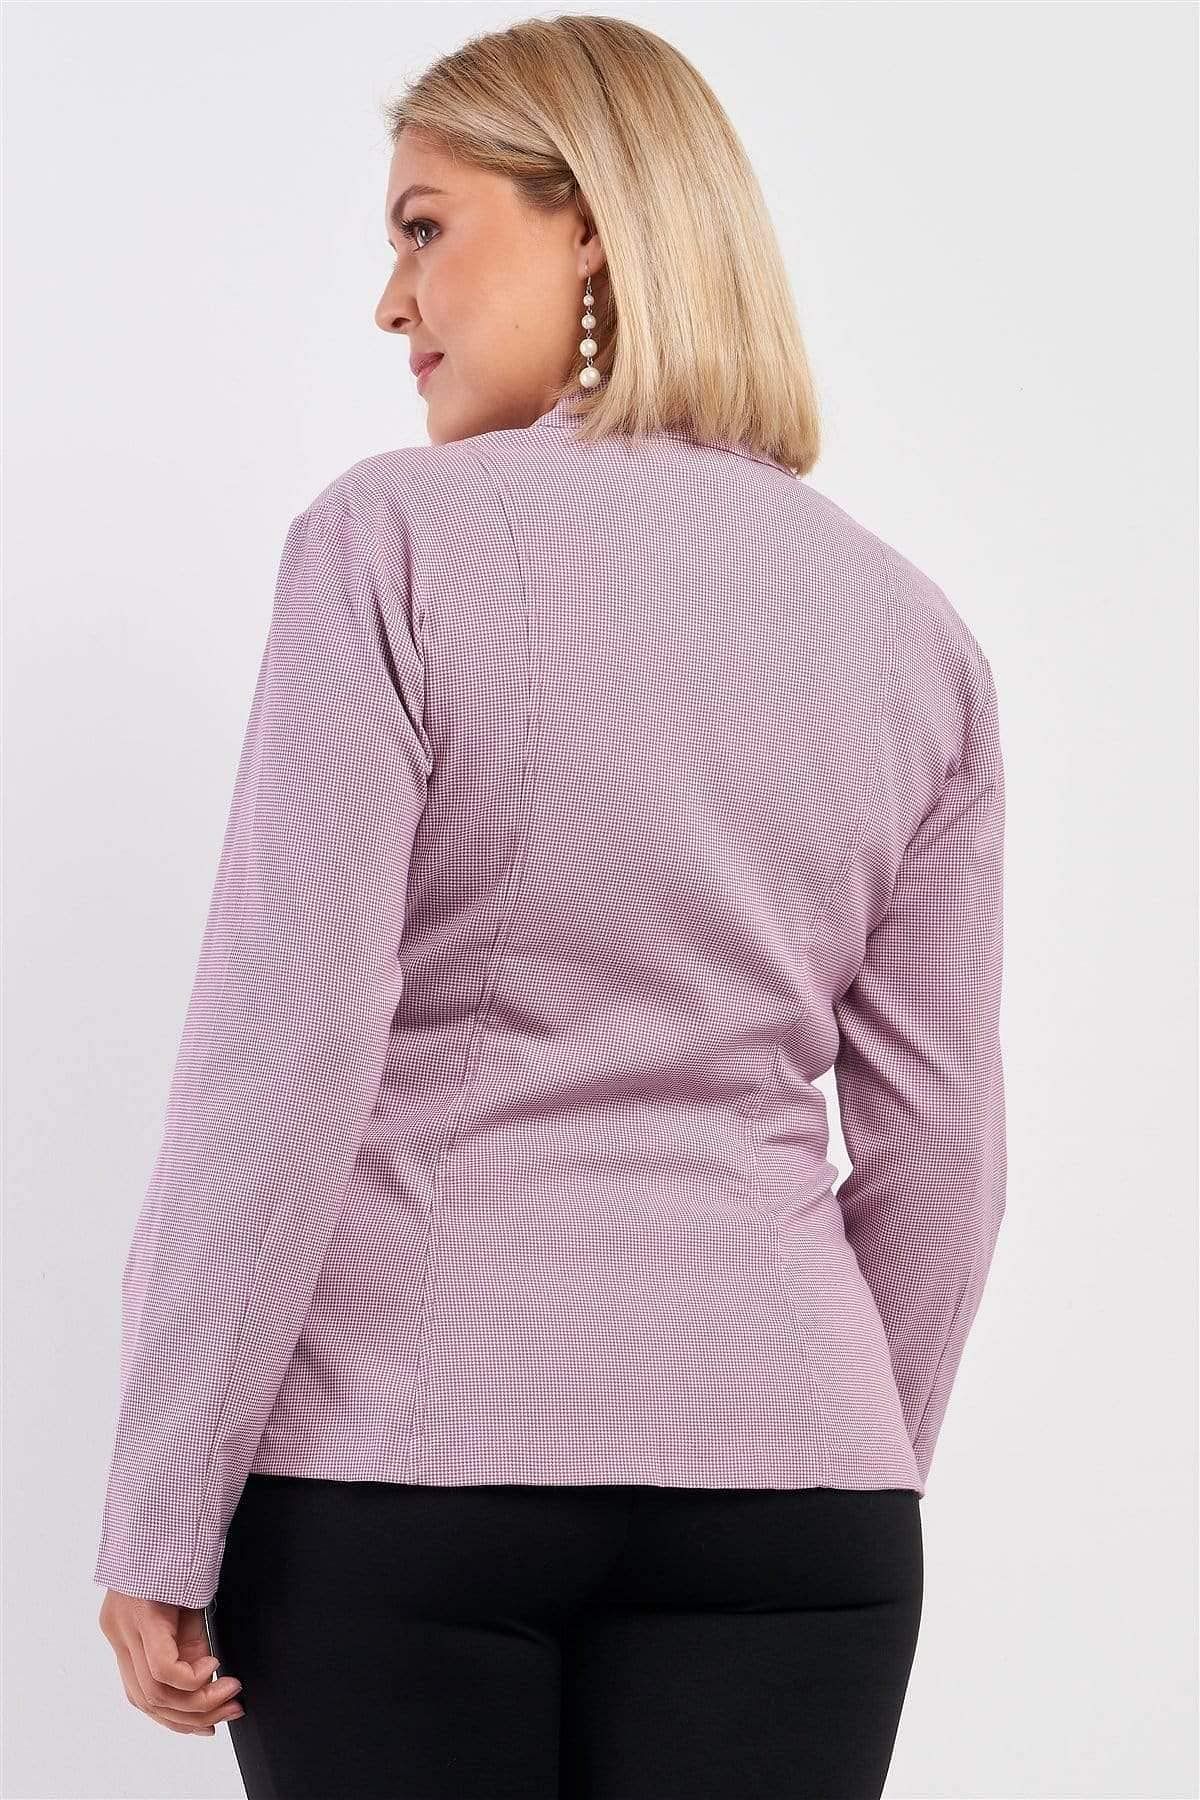 Mauve Plus Size Long Sleeve Jacket - Shopping Therapy Jacket